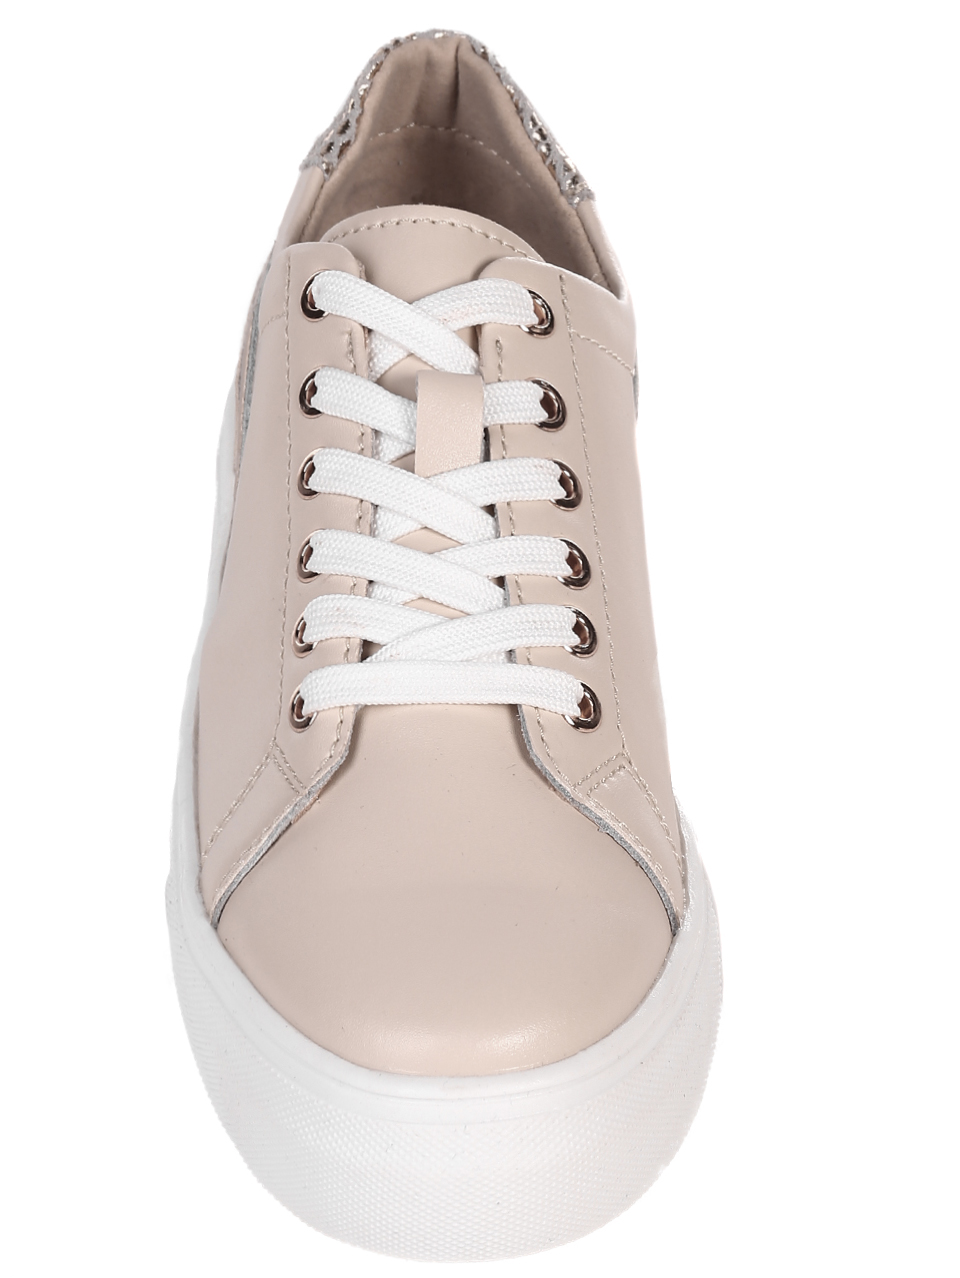 Ежедневни дамски обувки от естествена кожа в бежово 3AF-22127 beige